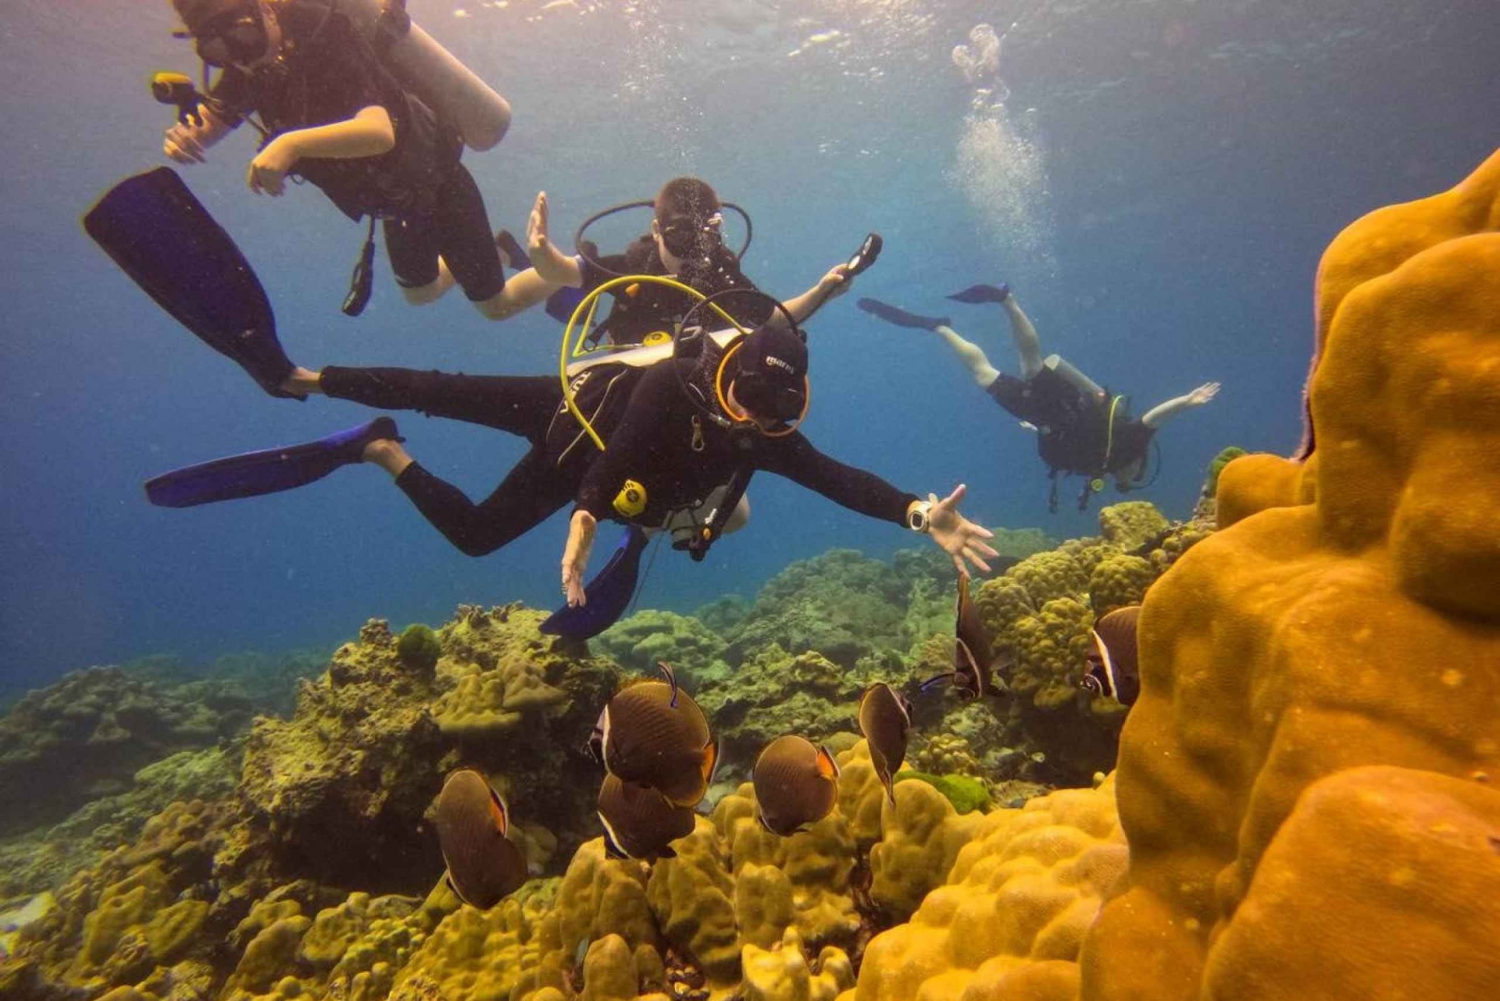 Fra Phuket: Heldagsudflugt med dykning på Similan-øen